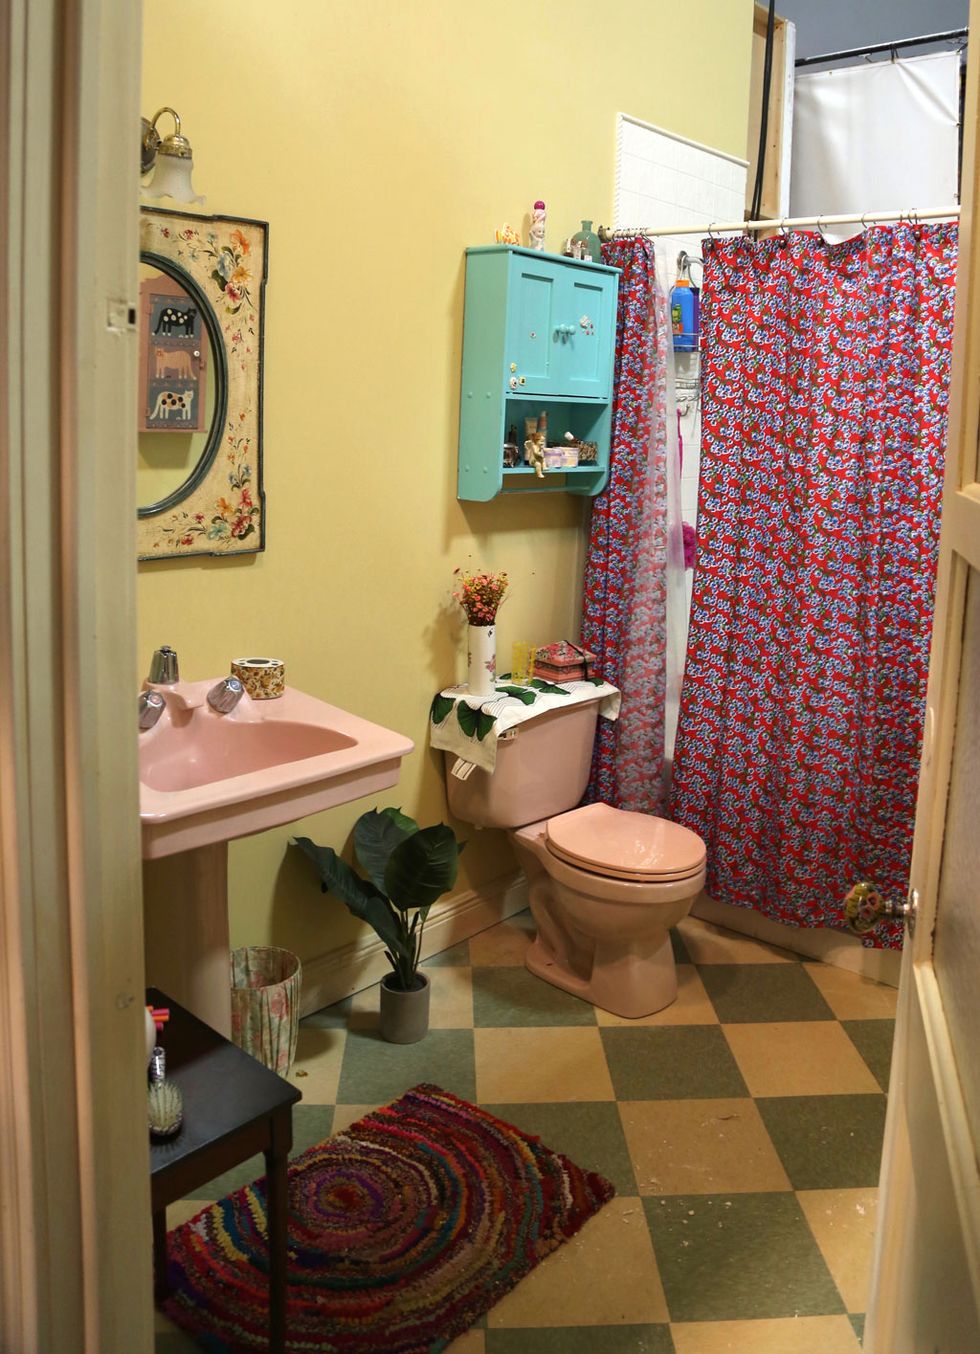 Plumbing fixture, Room, Interior design, Green, Floor, Flooring, Property, Toilet seat, Bathroom sink, Purple, 